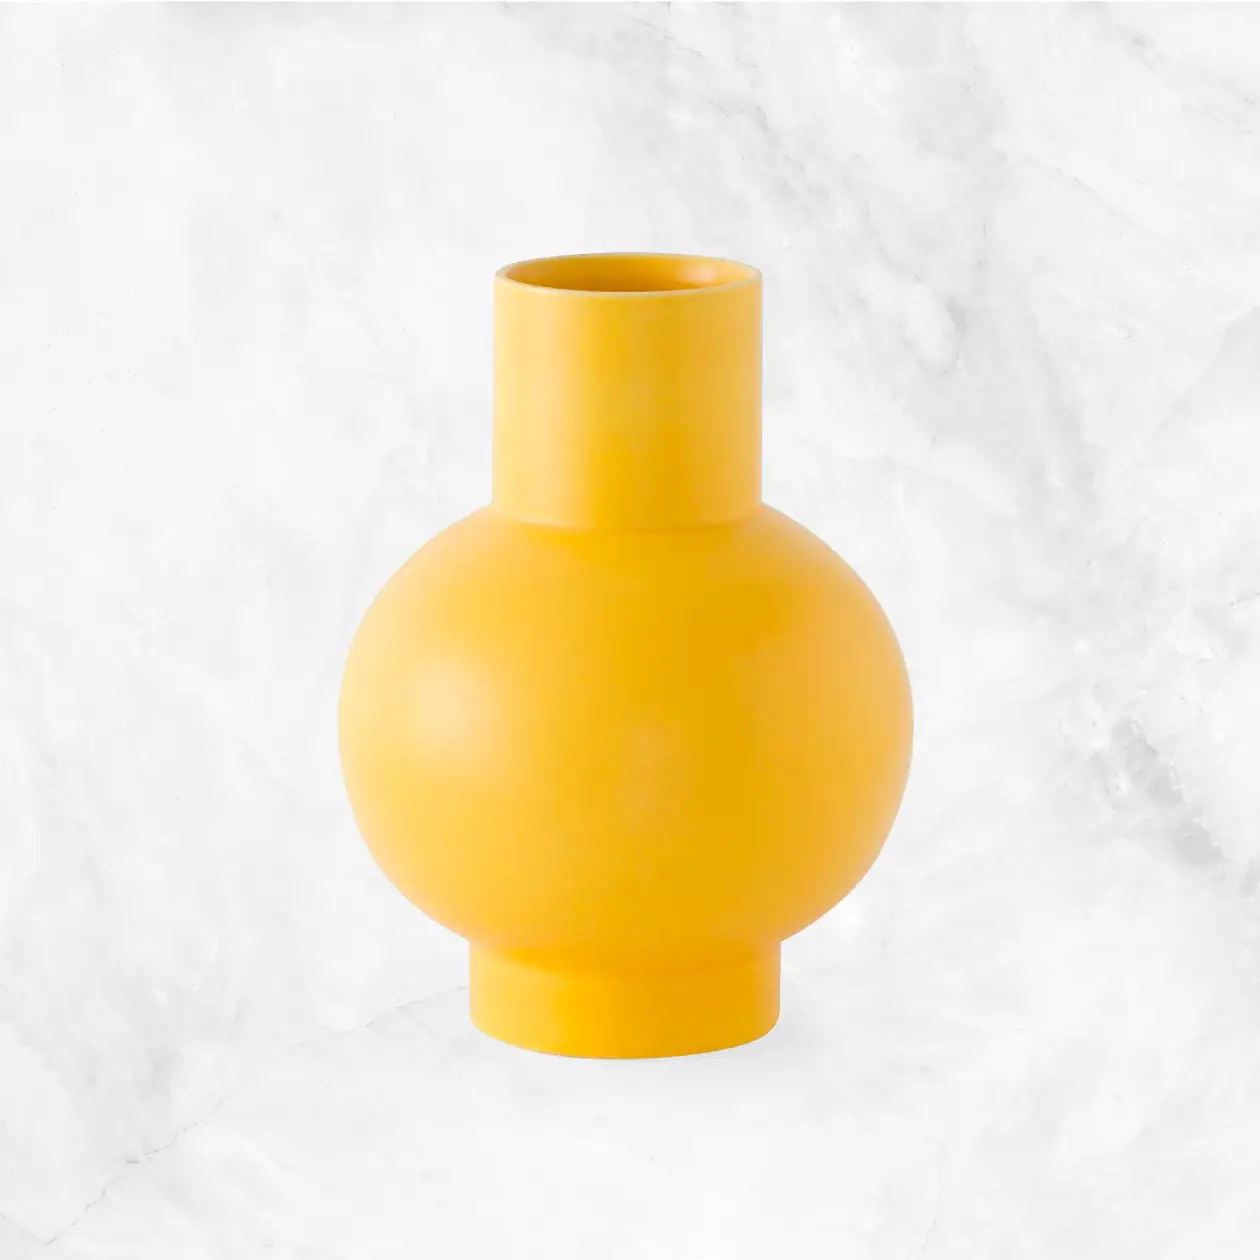 Nicholai Wiig-Hansen - Strøm Vase - Yellow Delivery